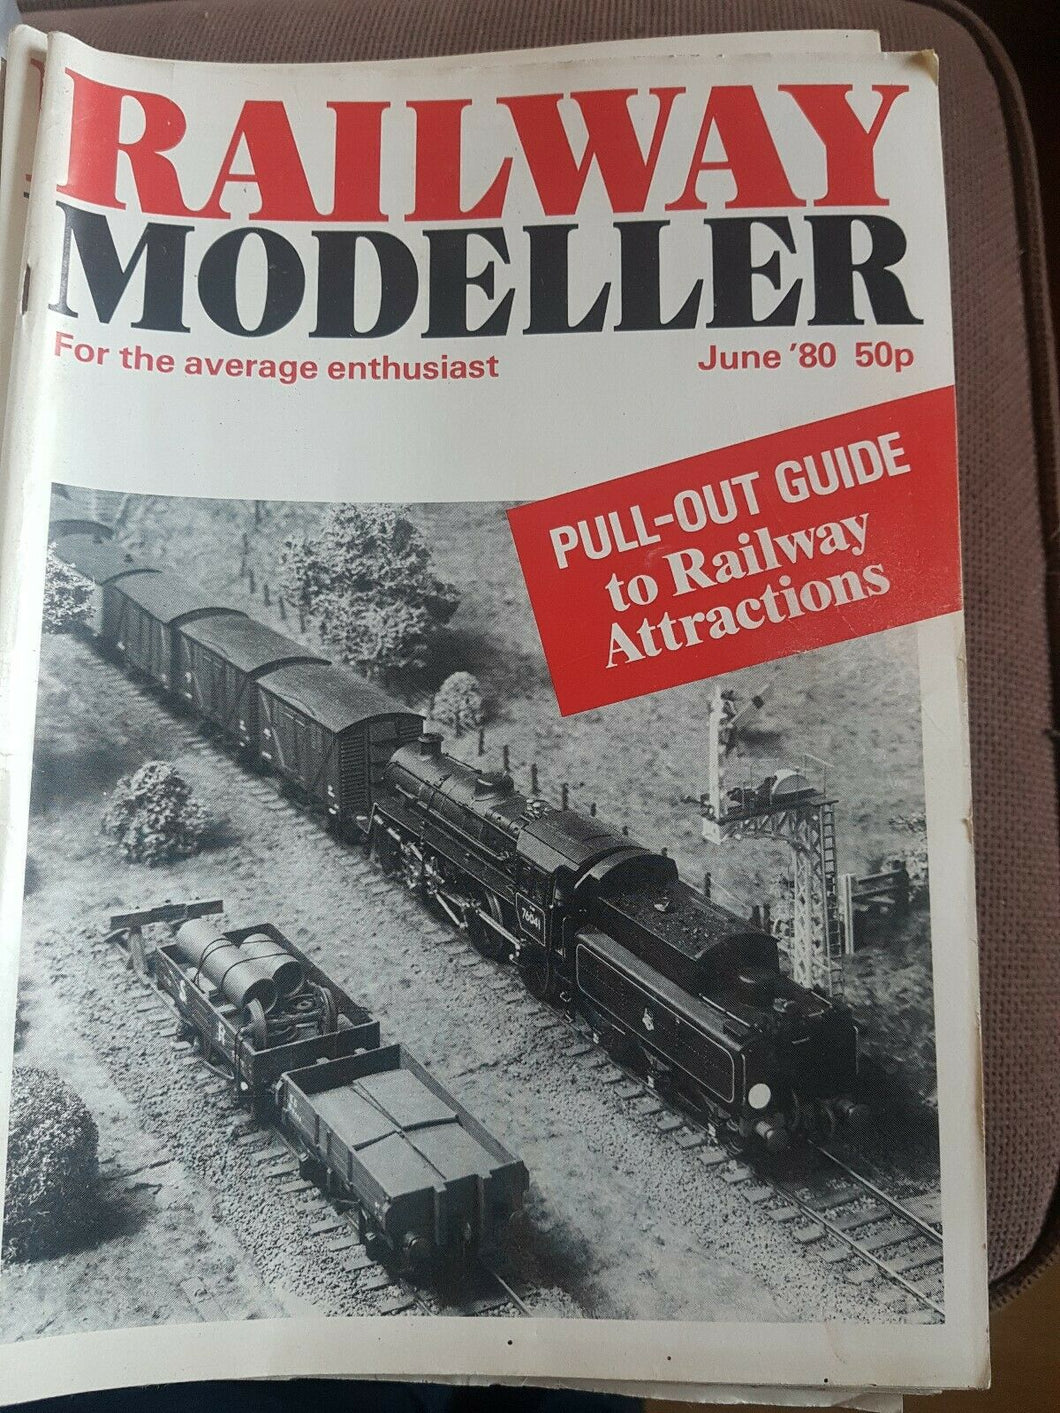 Railway modeller magazine June 1980